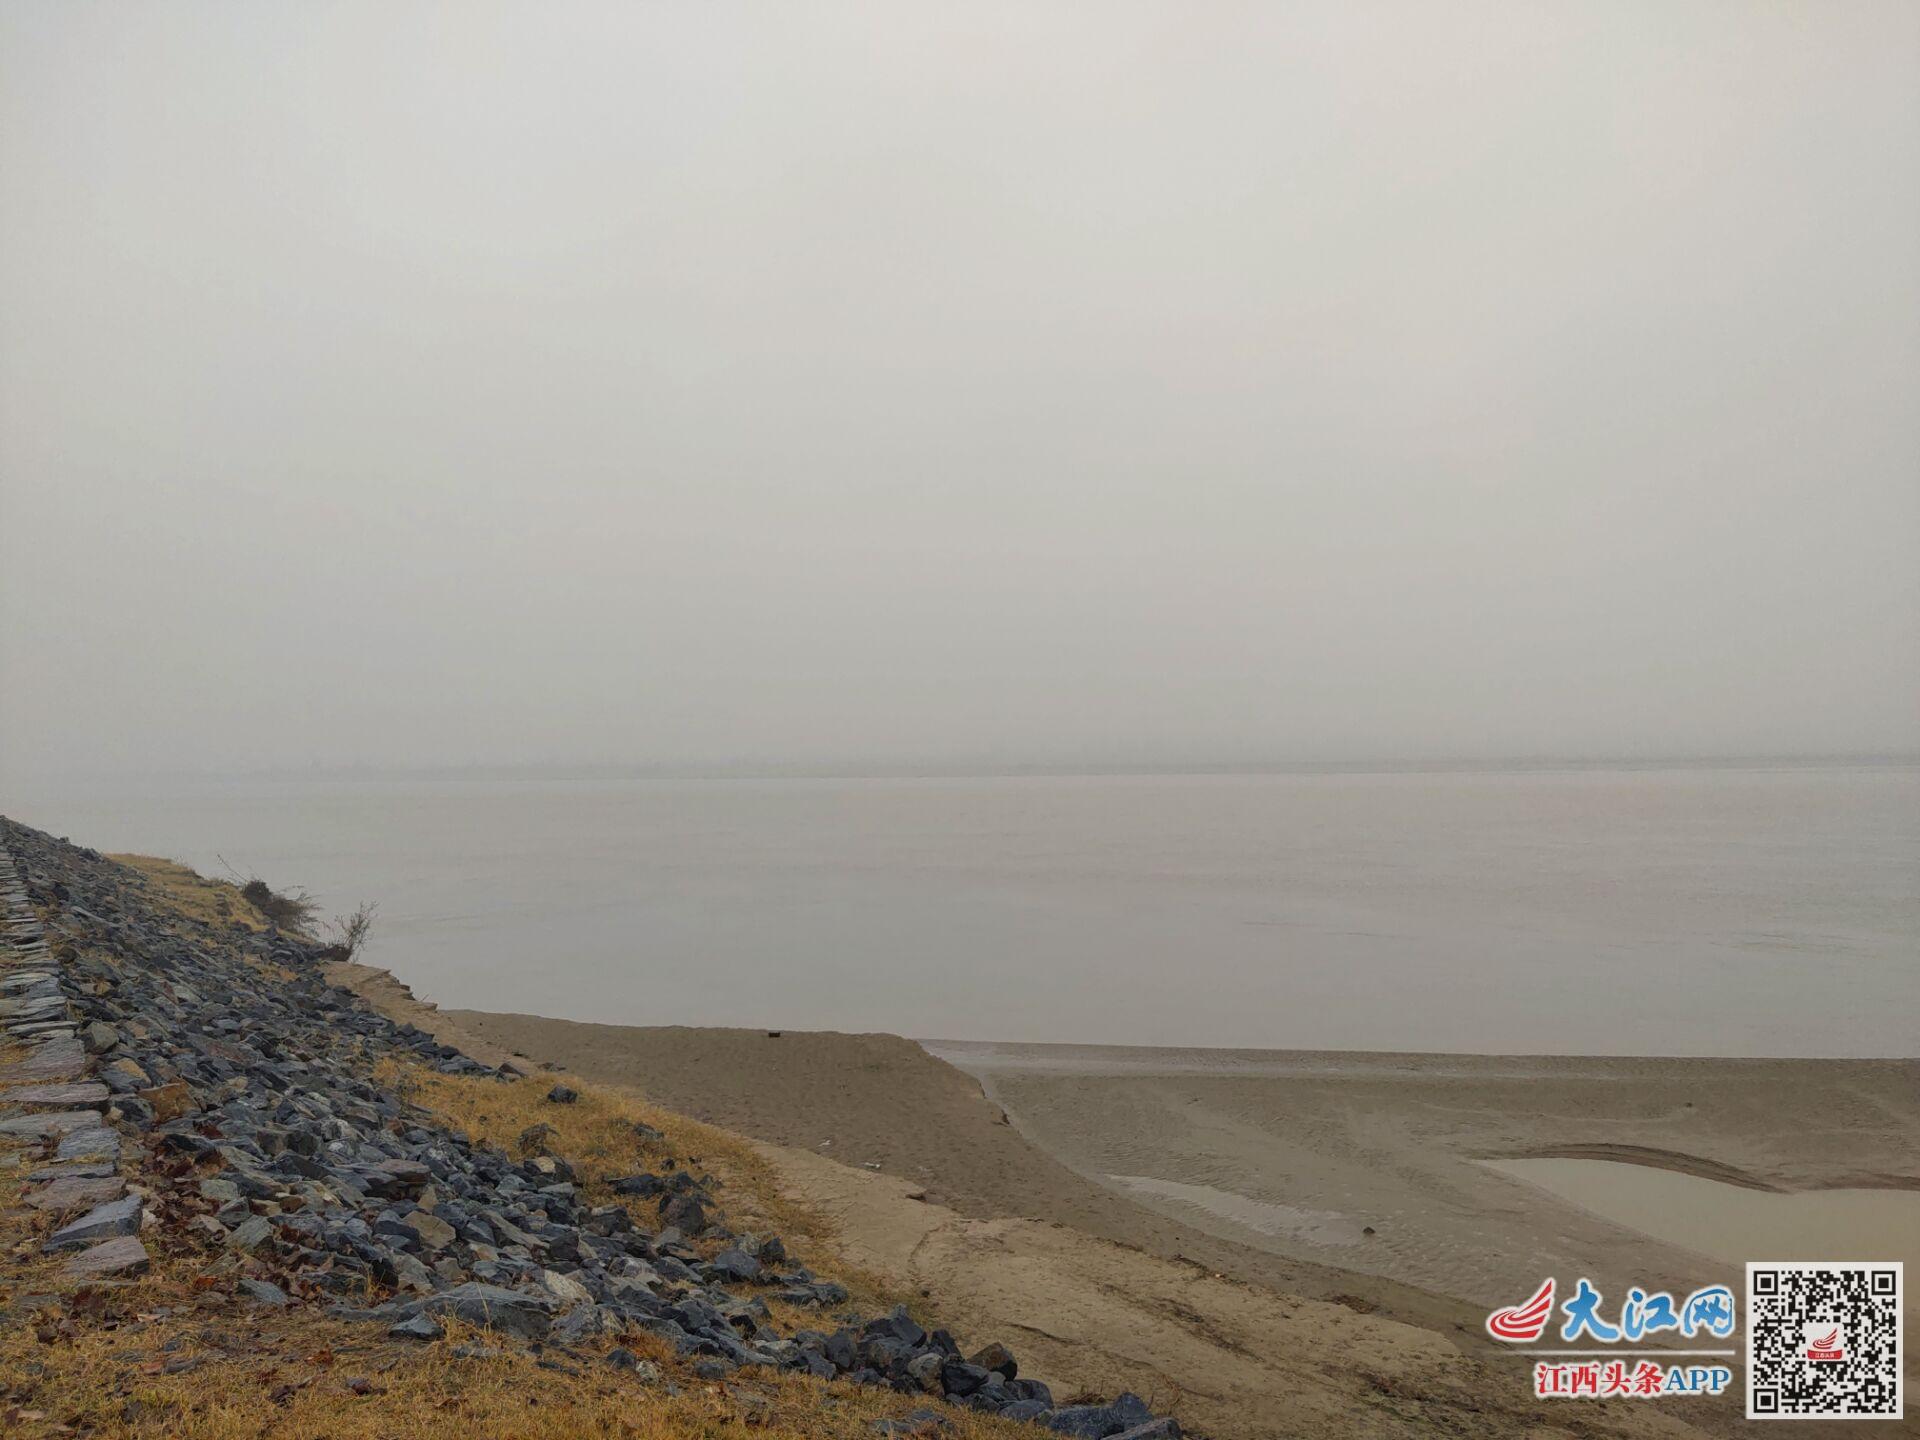 原阳县黄河大堤公安封锁区域河面没见到捕捞搜寻人员